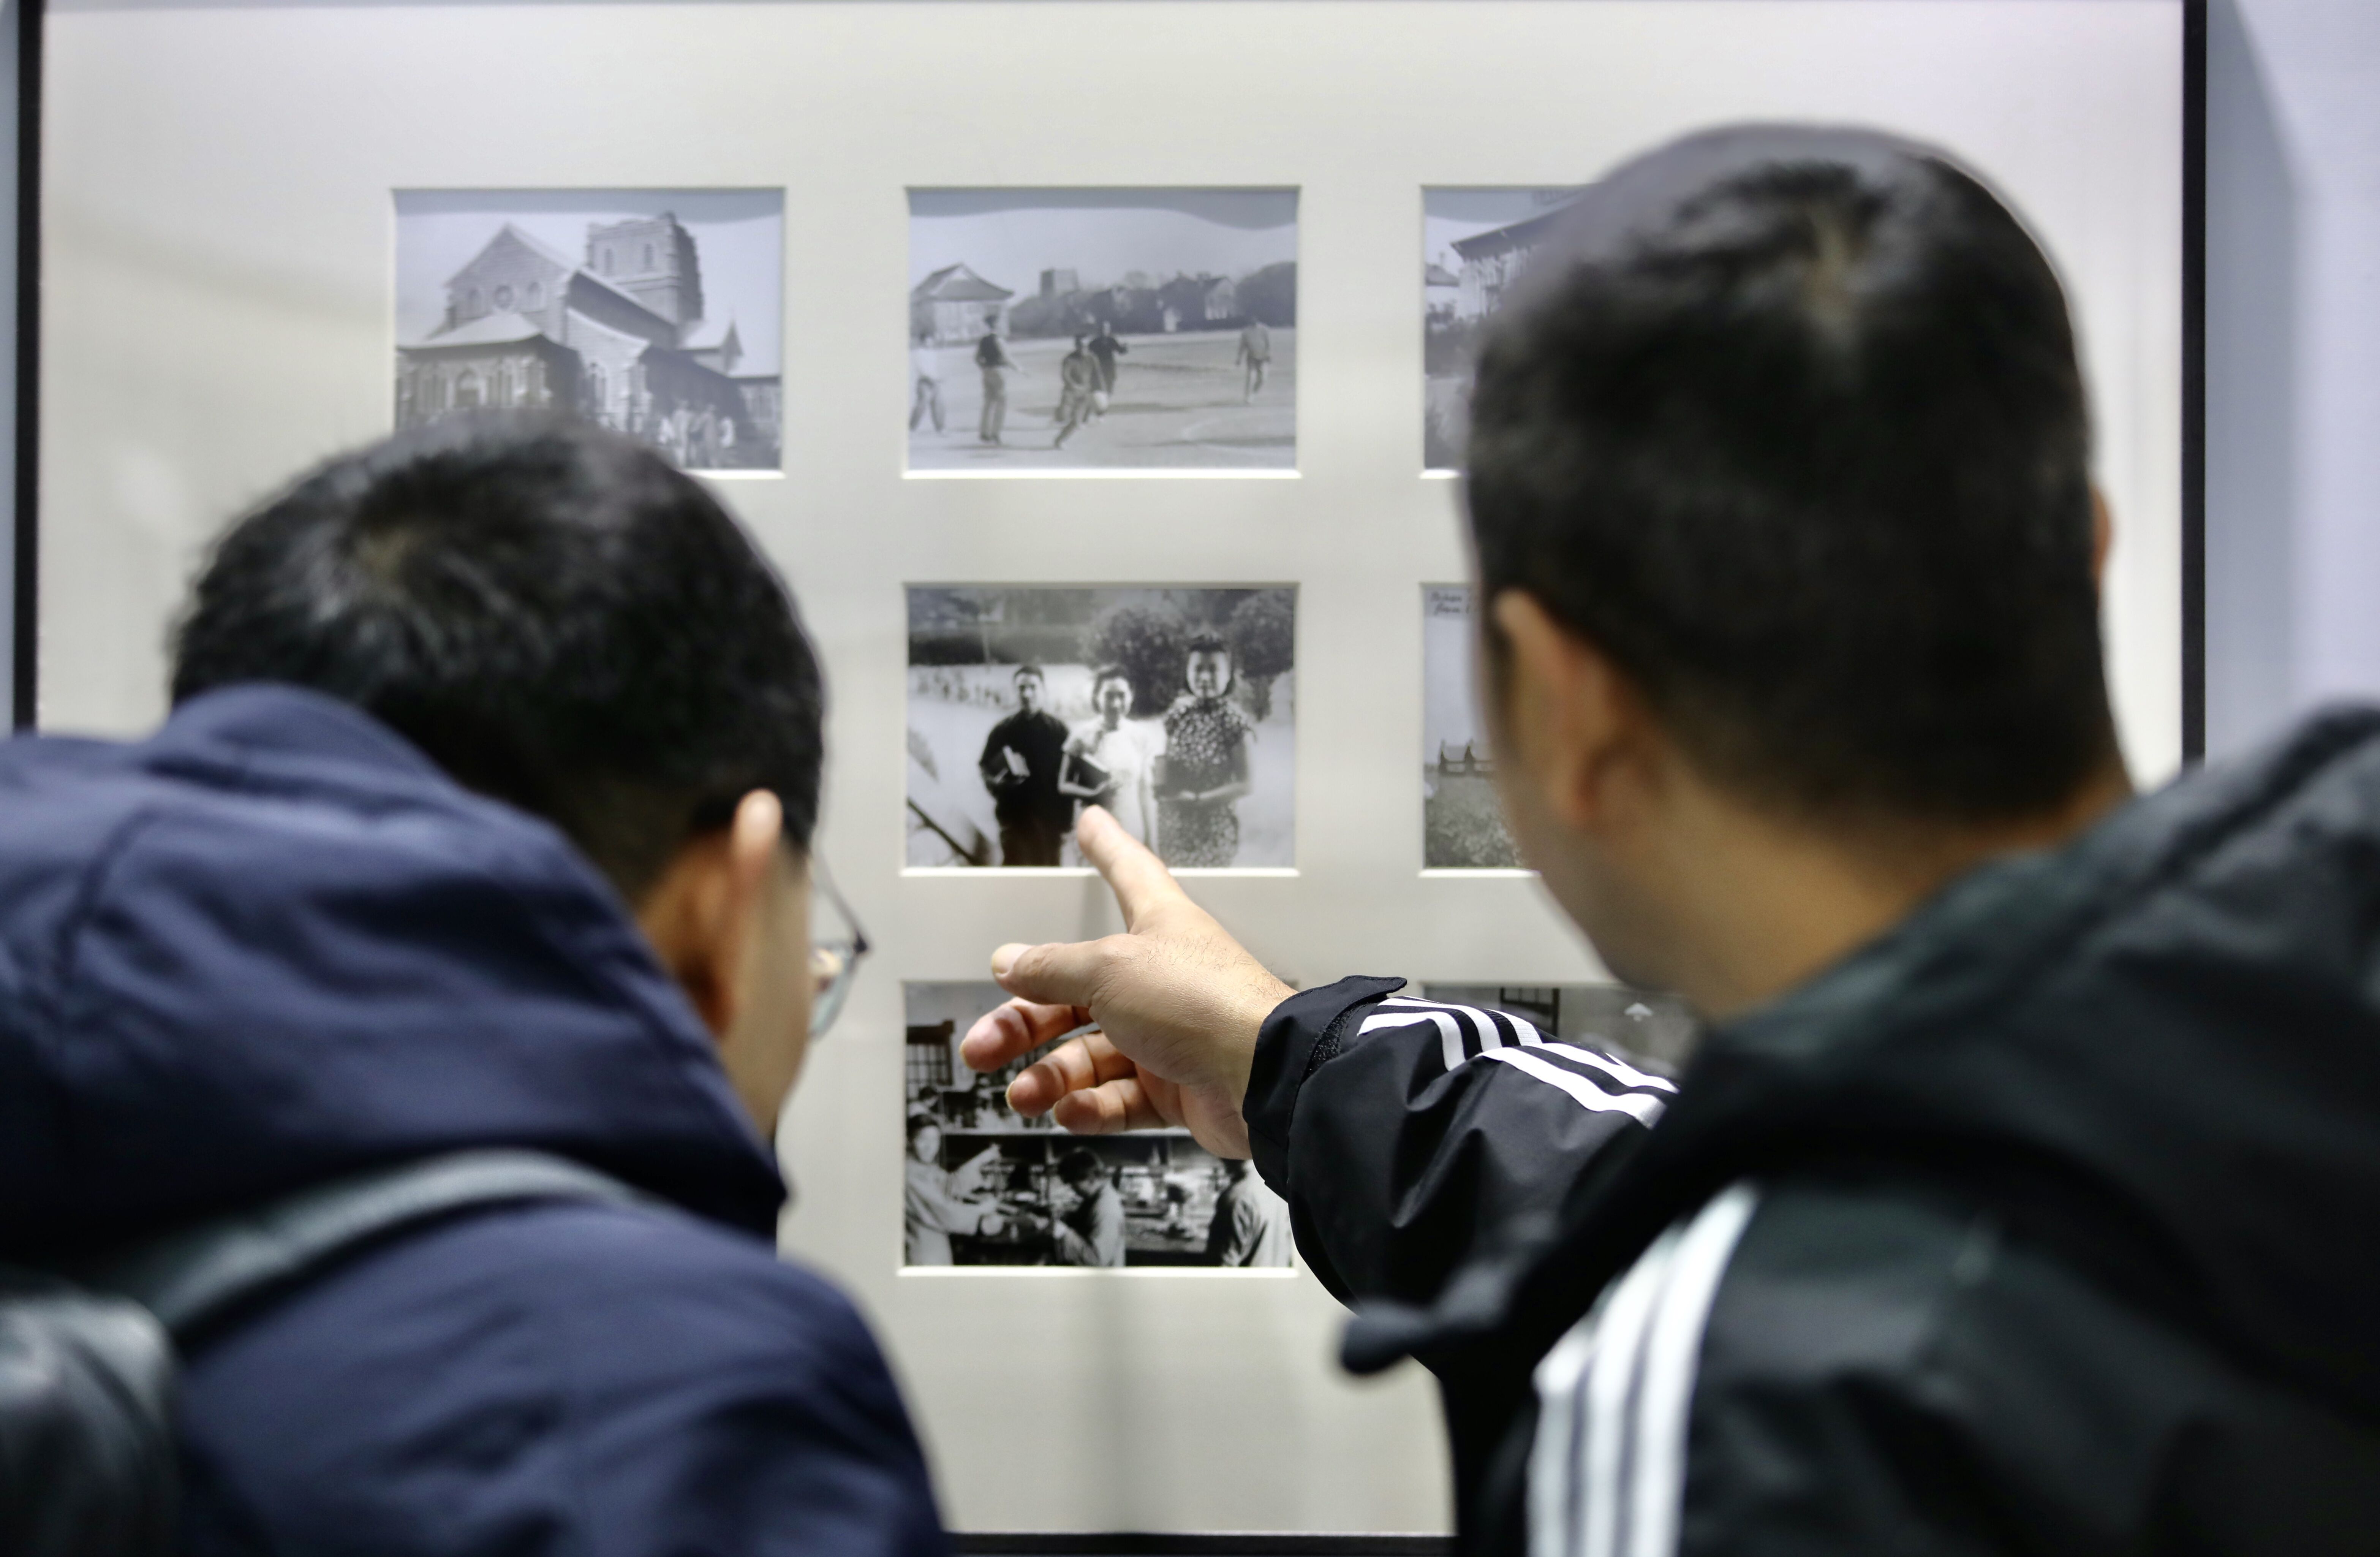 百万张照片架起“济南记忆”桥，济南记忆影像保护工程正式启动